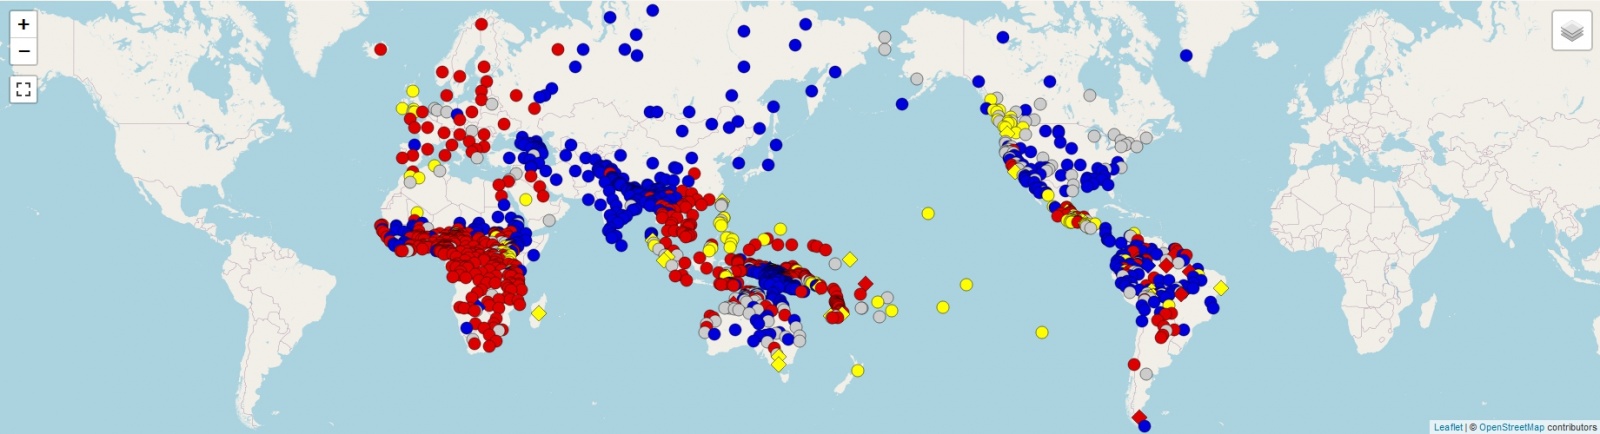 Интерактивная подробная карта порядка слов в языках мира